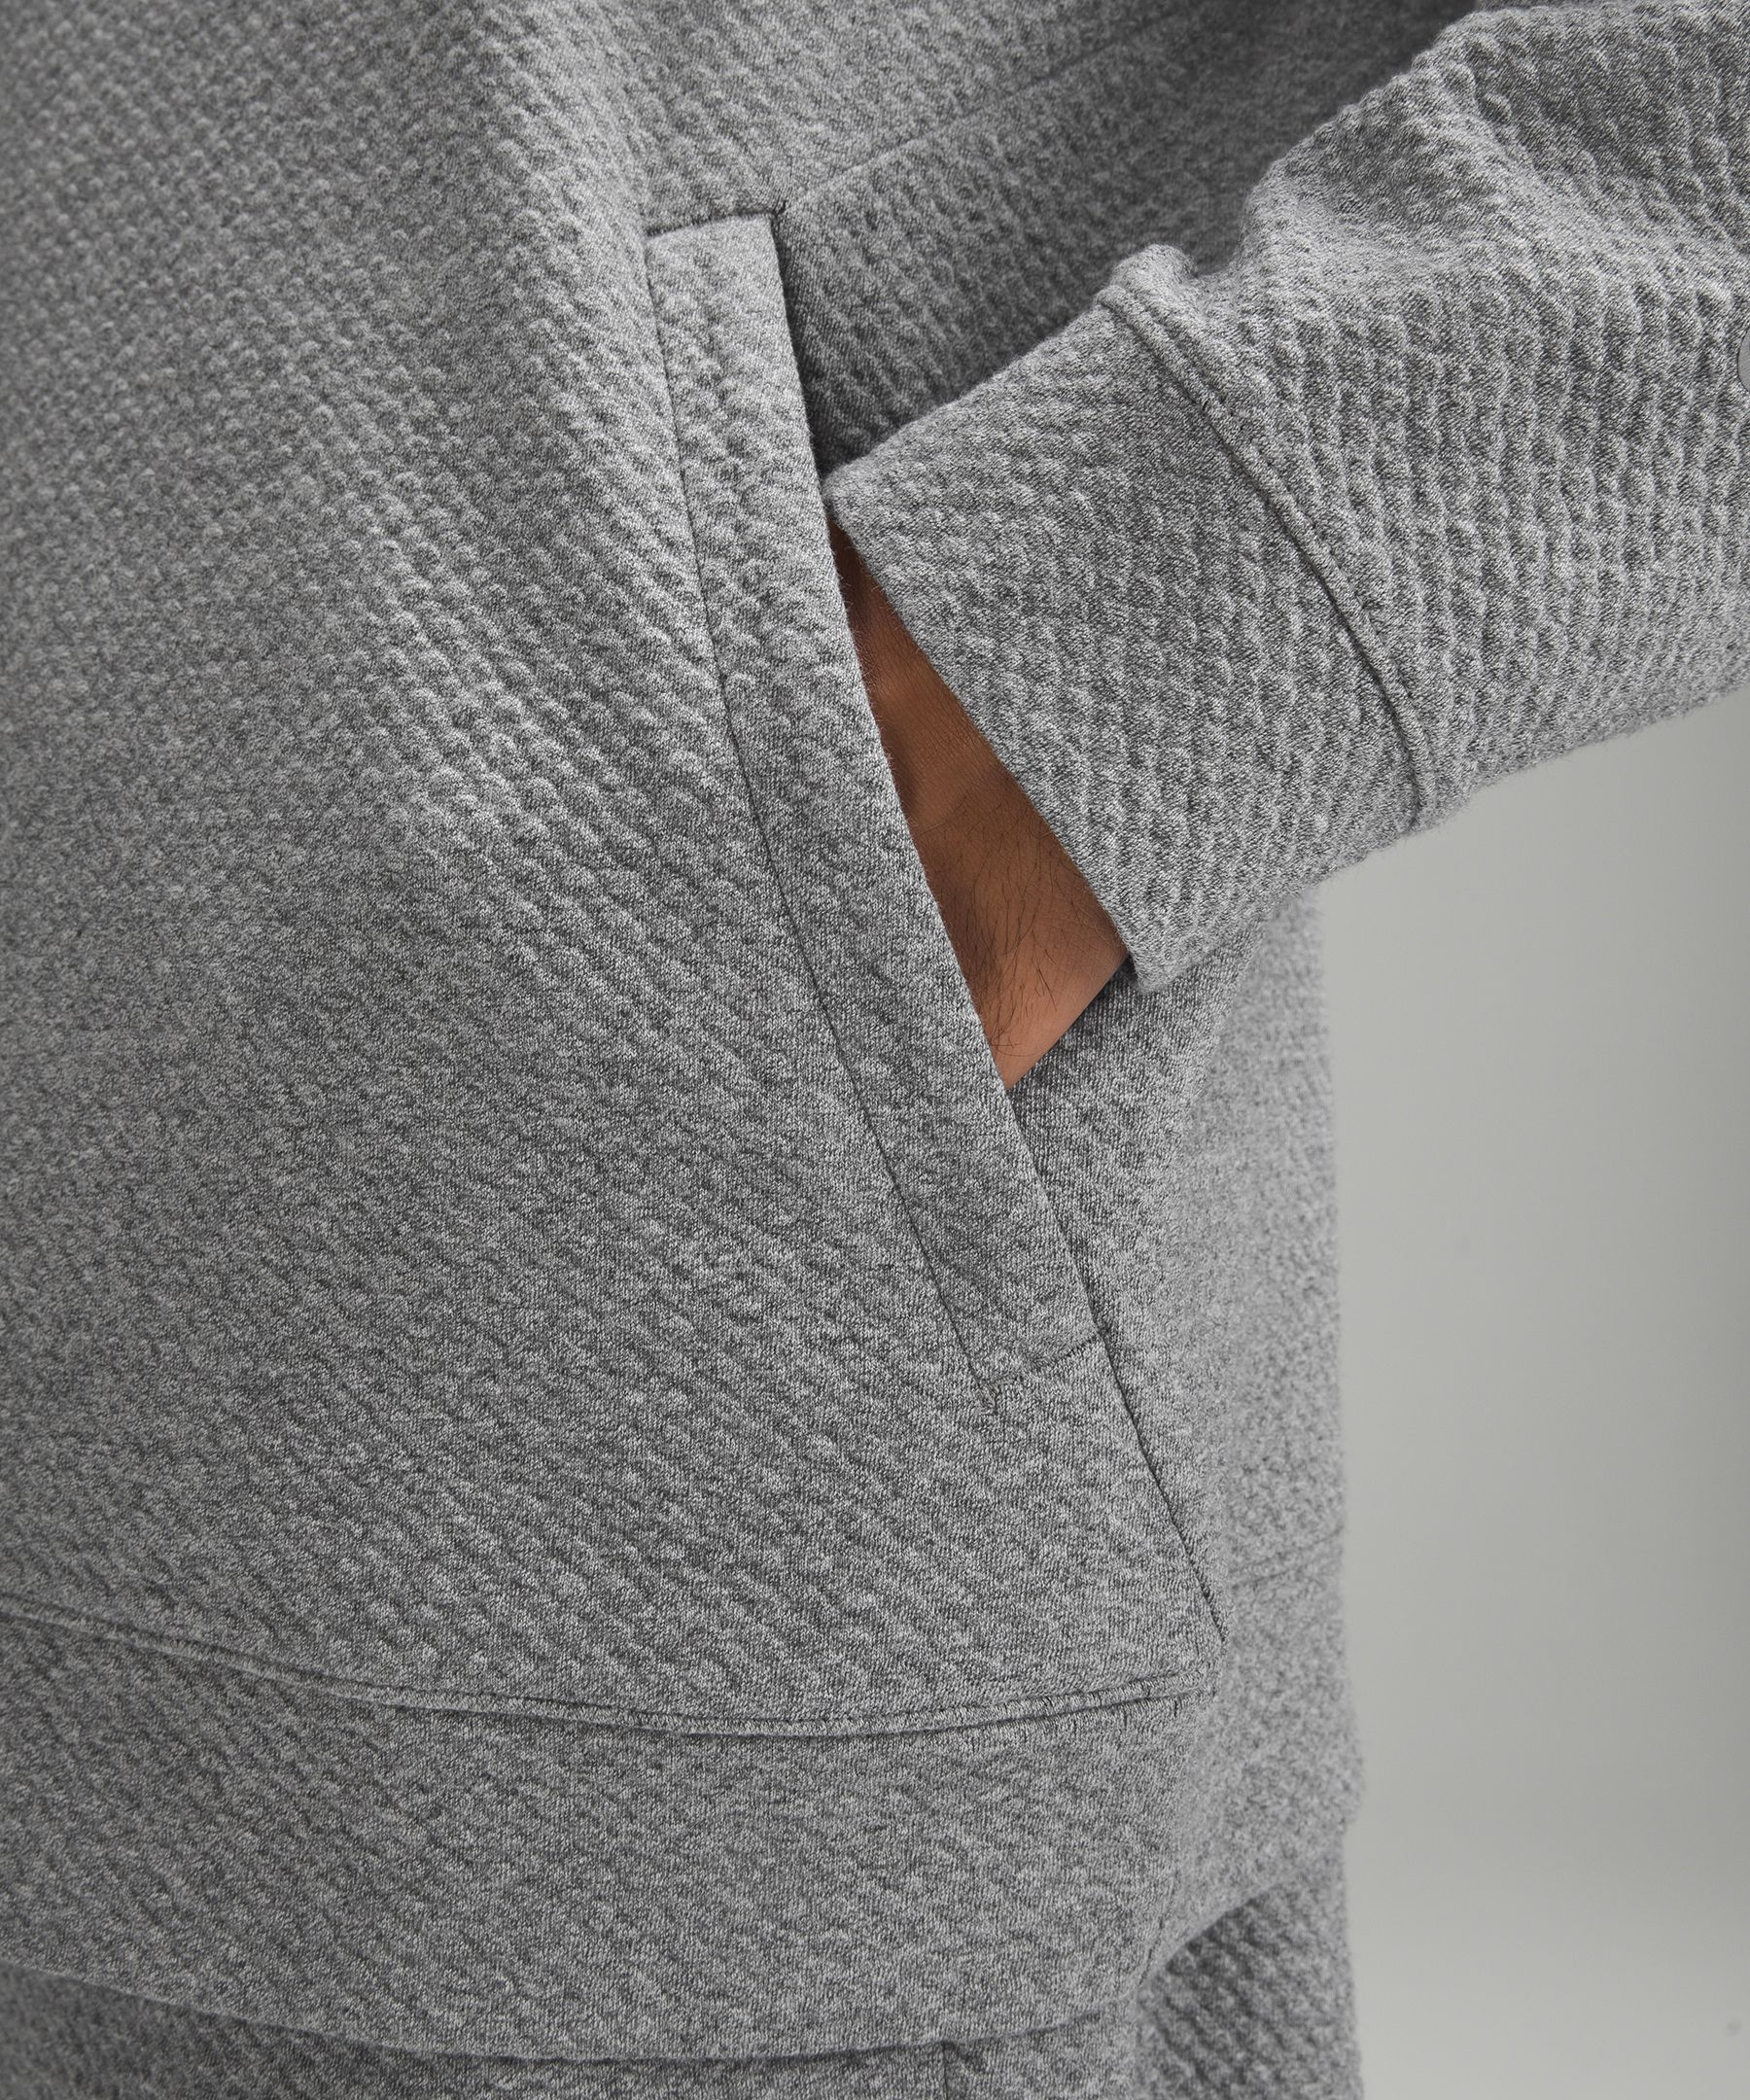 Textured Double-Knit Cotton Hoodie, Men's Hoodies & Sweatshirts